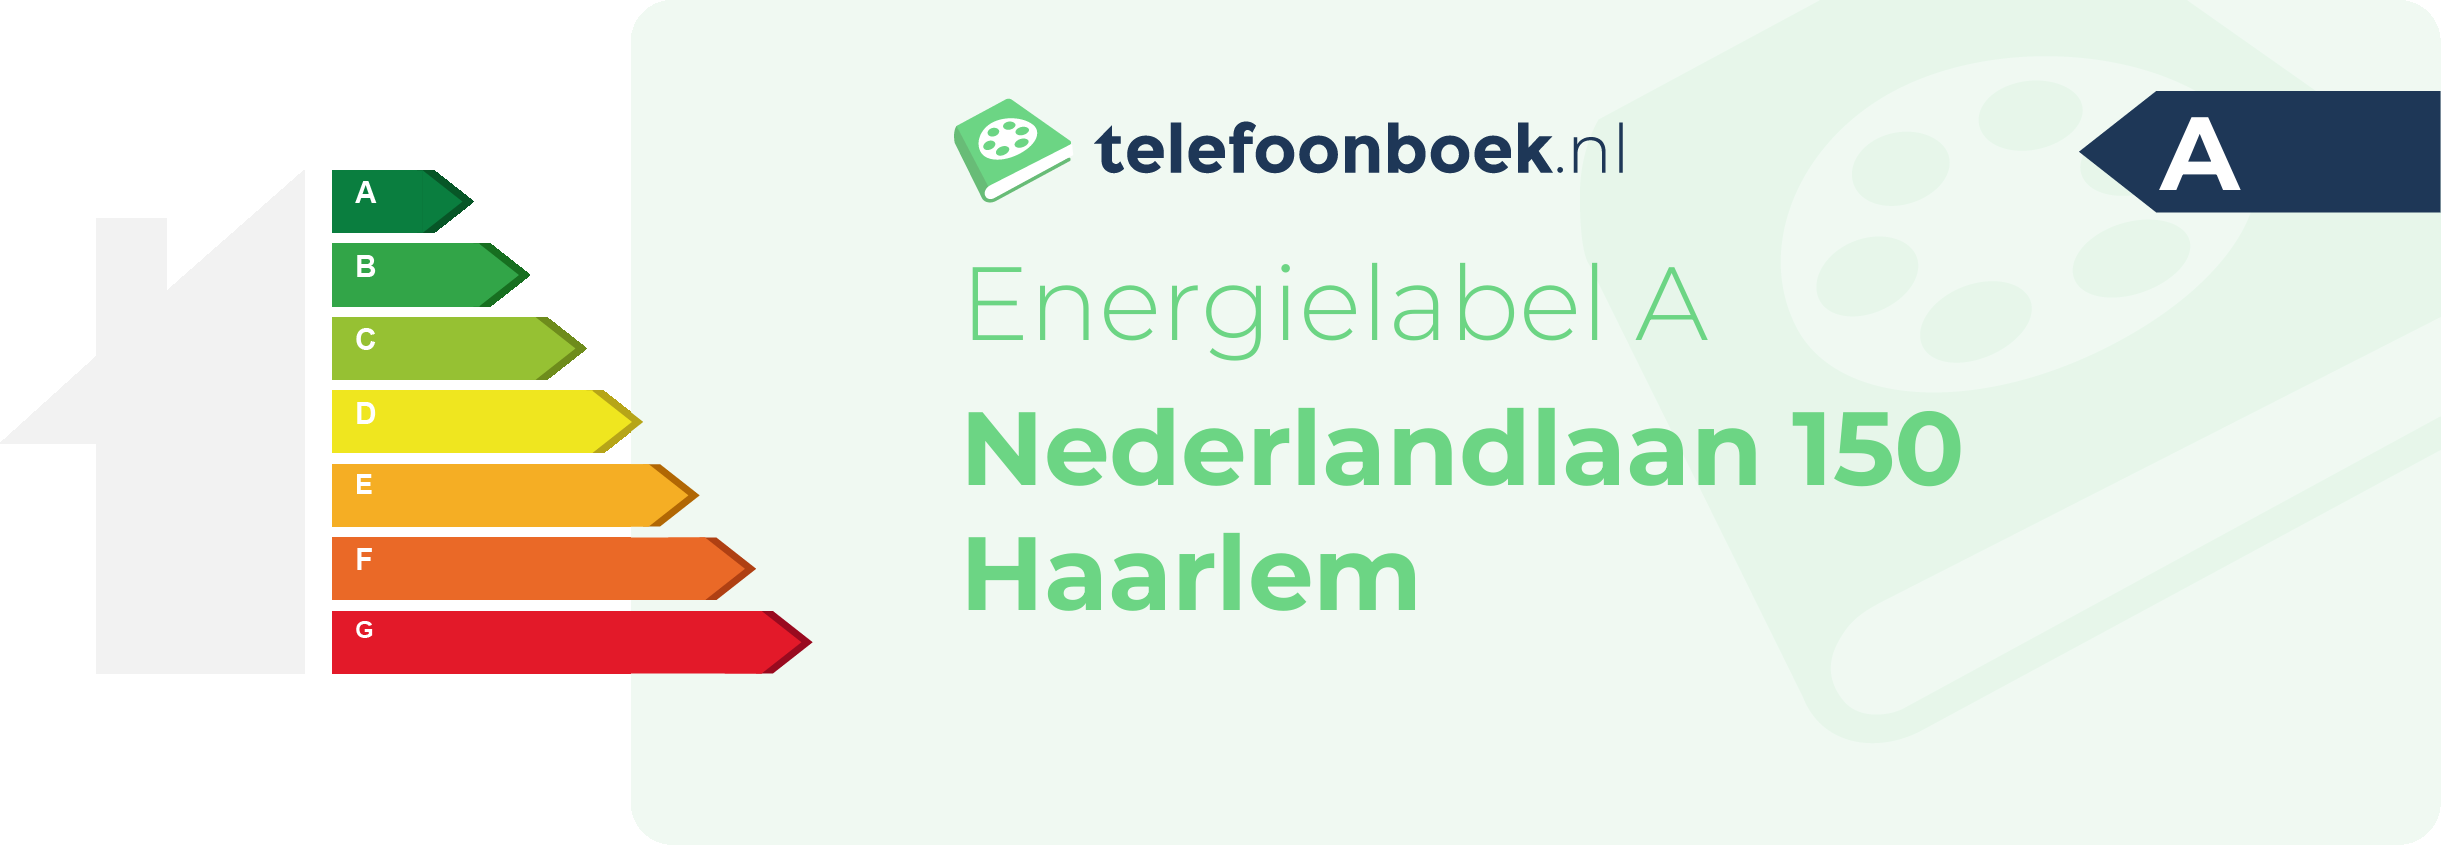 Energielabel Nederlandlaan 150 Haarlem